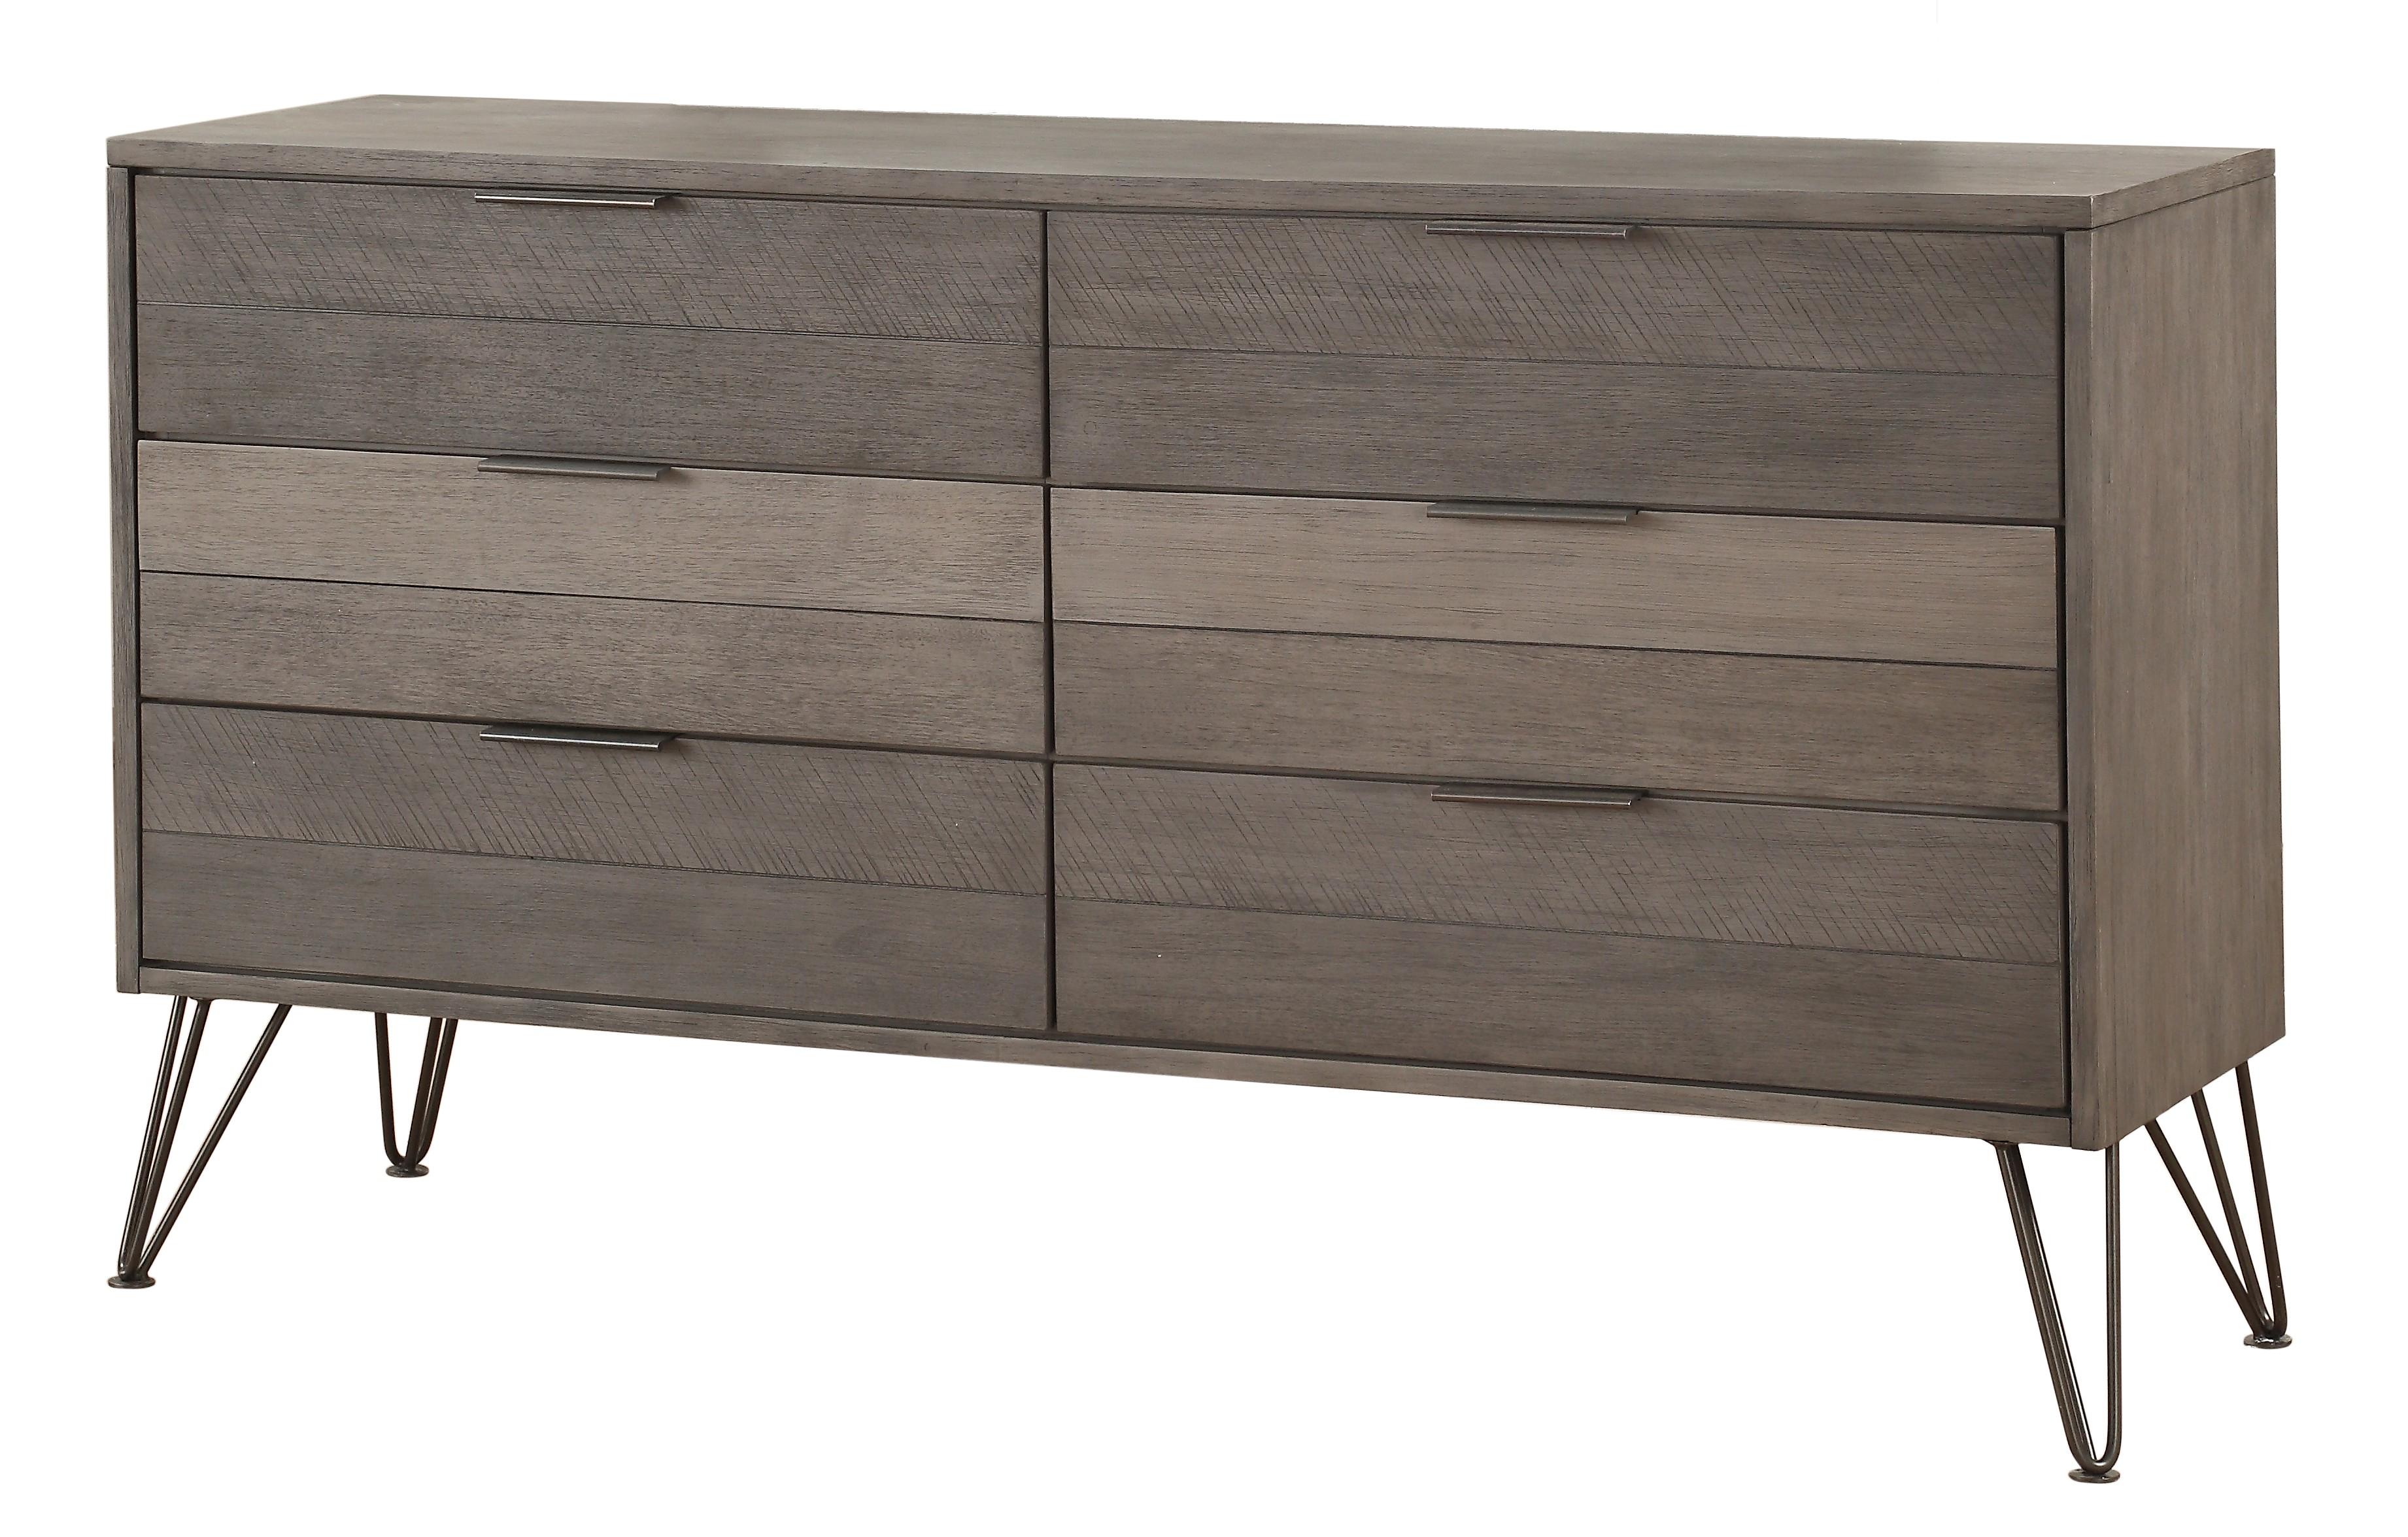 Contemporary Dresser 1604-5 Urbanite 1604-5 in Gray 